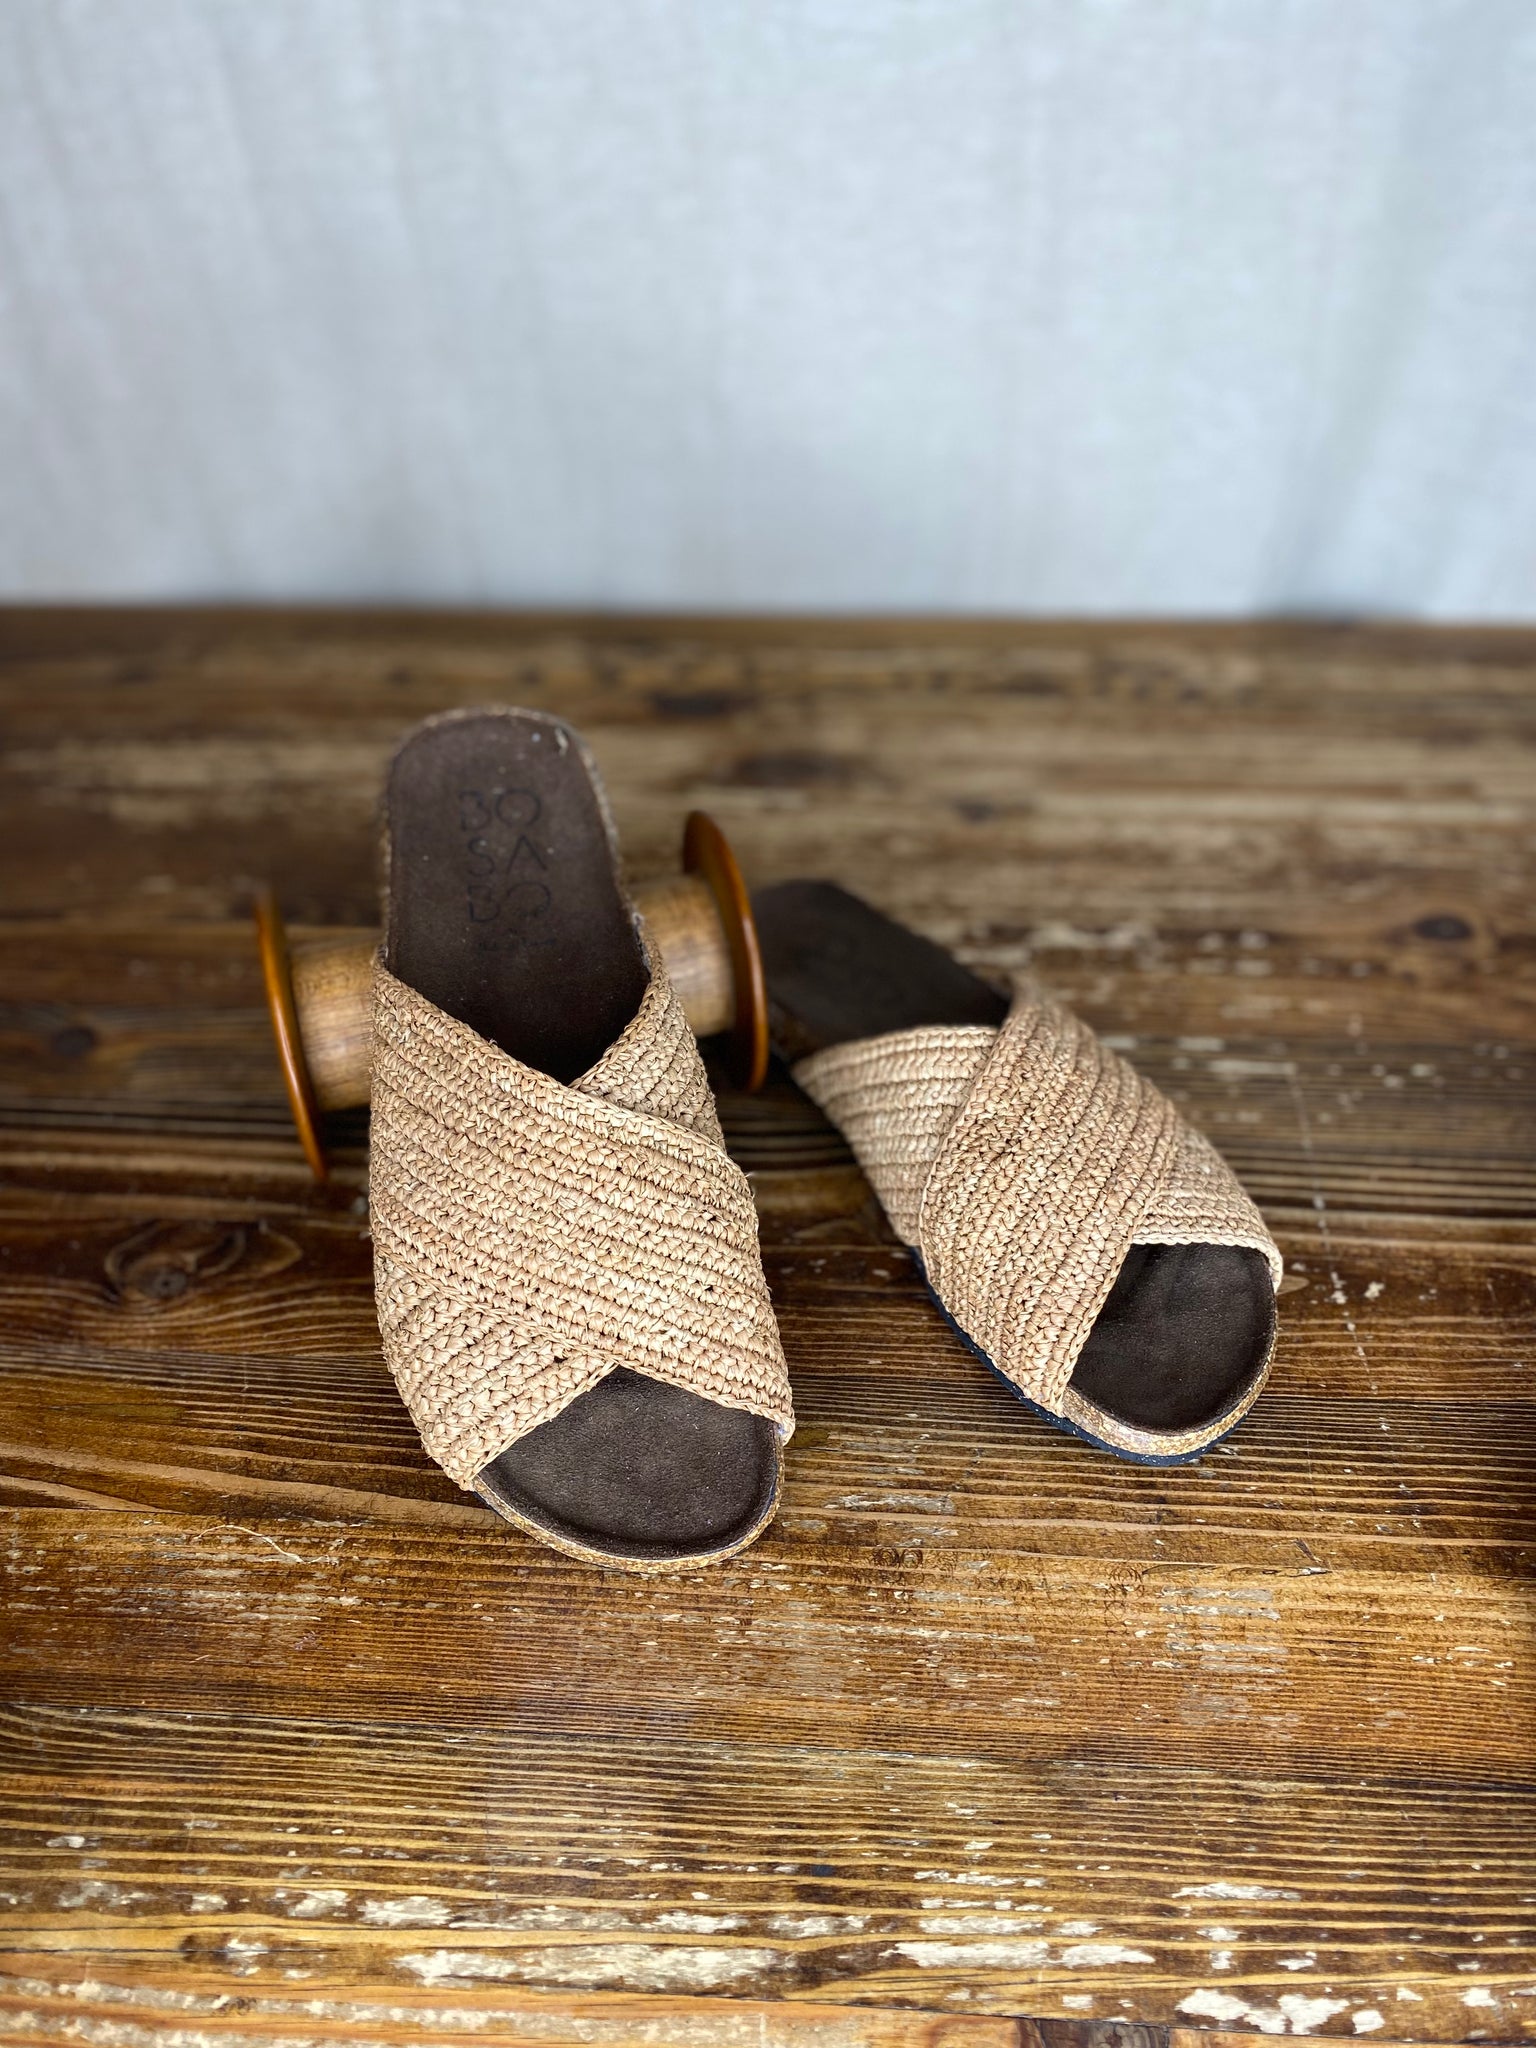 Bosabo French Footwear – From Dust